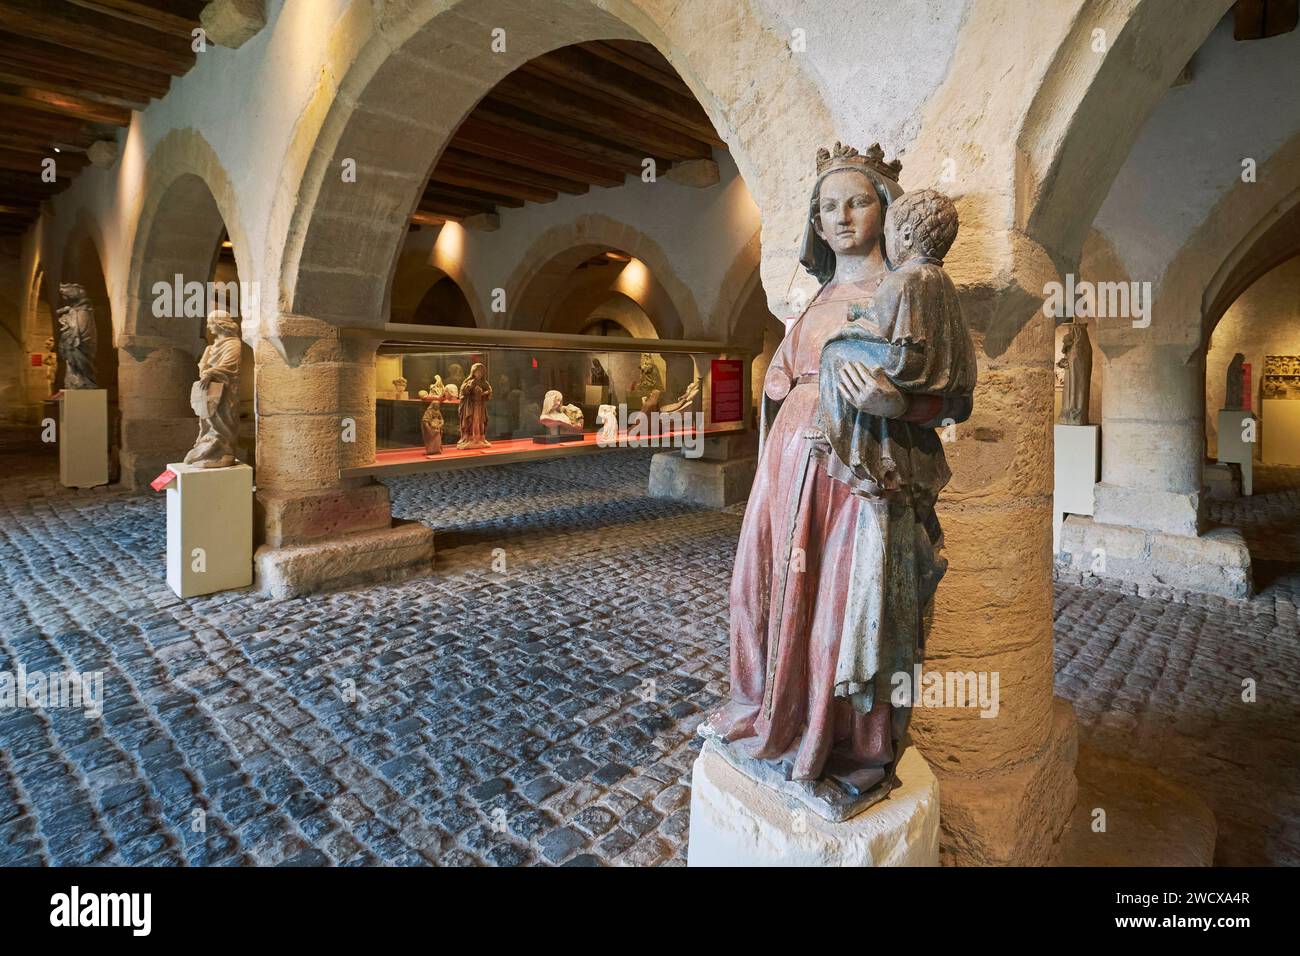 Francia, Mosella, Metz, il museo Cour d'Or della metropoli di Metz, l'attico di Chevremont ospita la statua religiosa medievale delle collezioni, Vergine e bambino fine XIII secolo Foto Stock